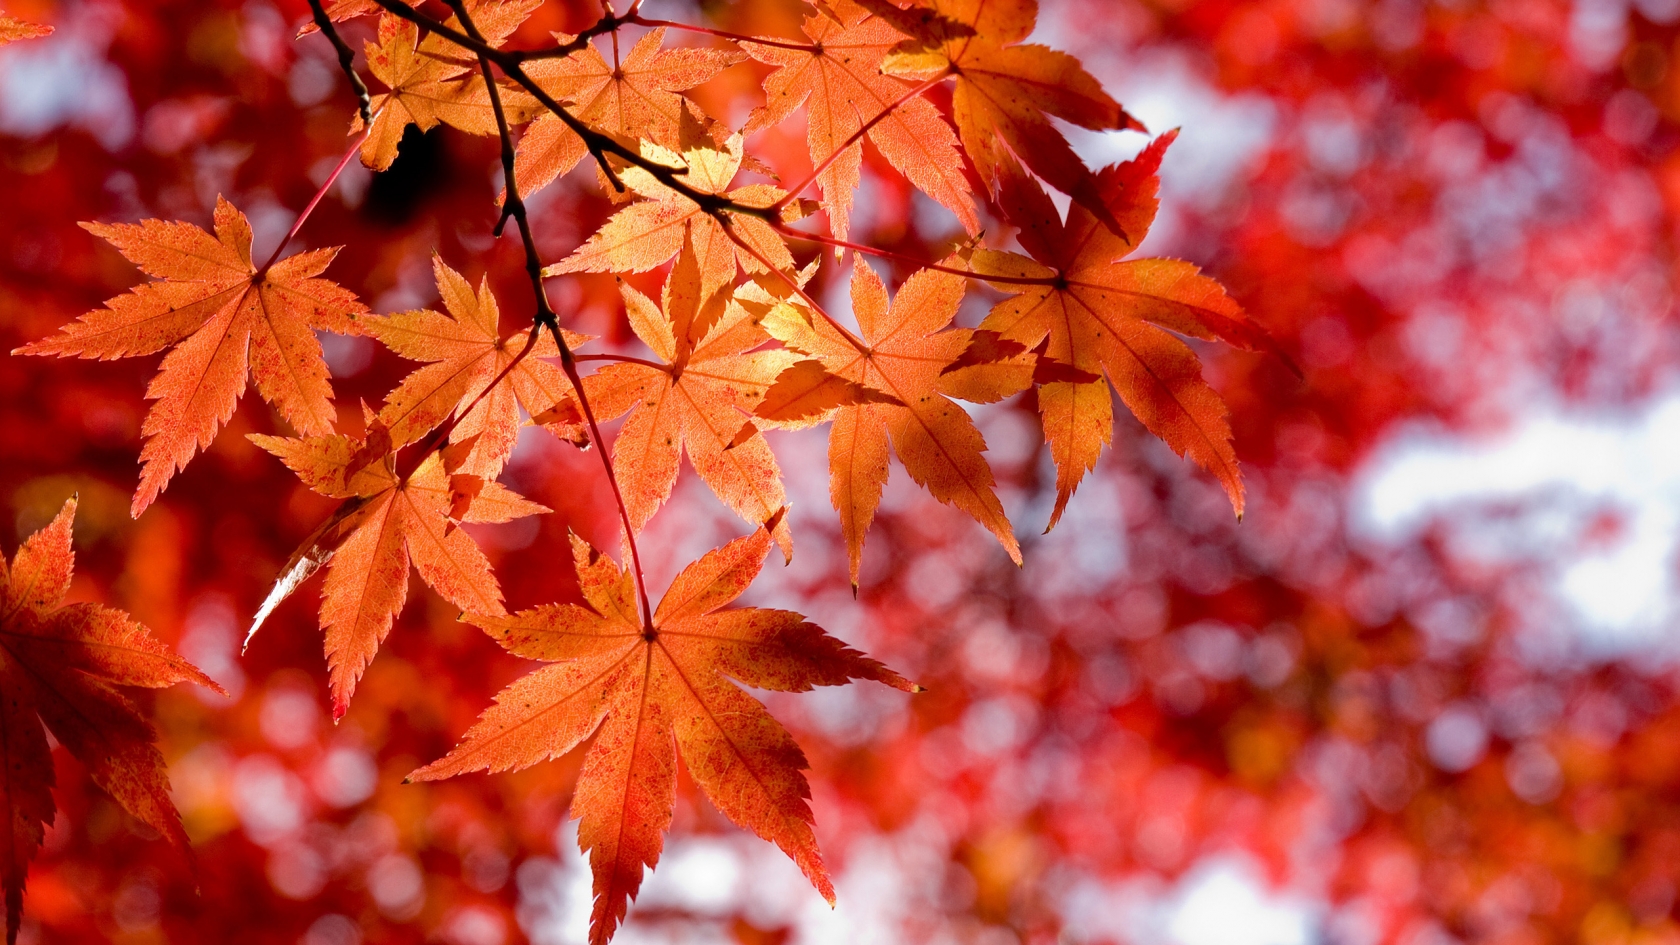 Maple Leaves for 1680 x 945 HDTV resolution